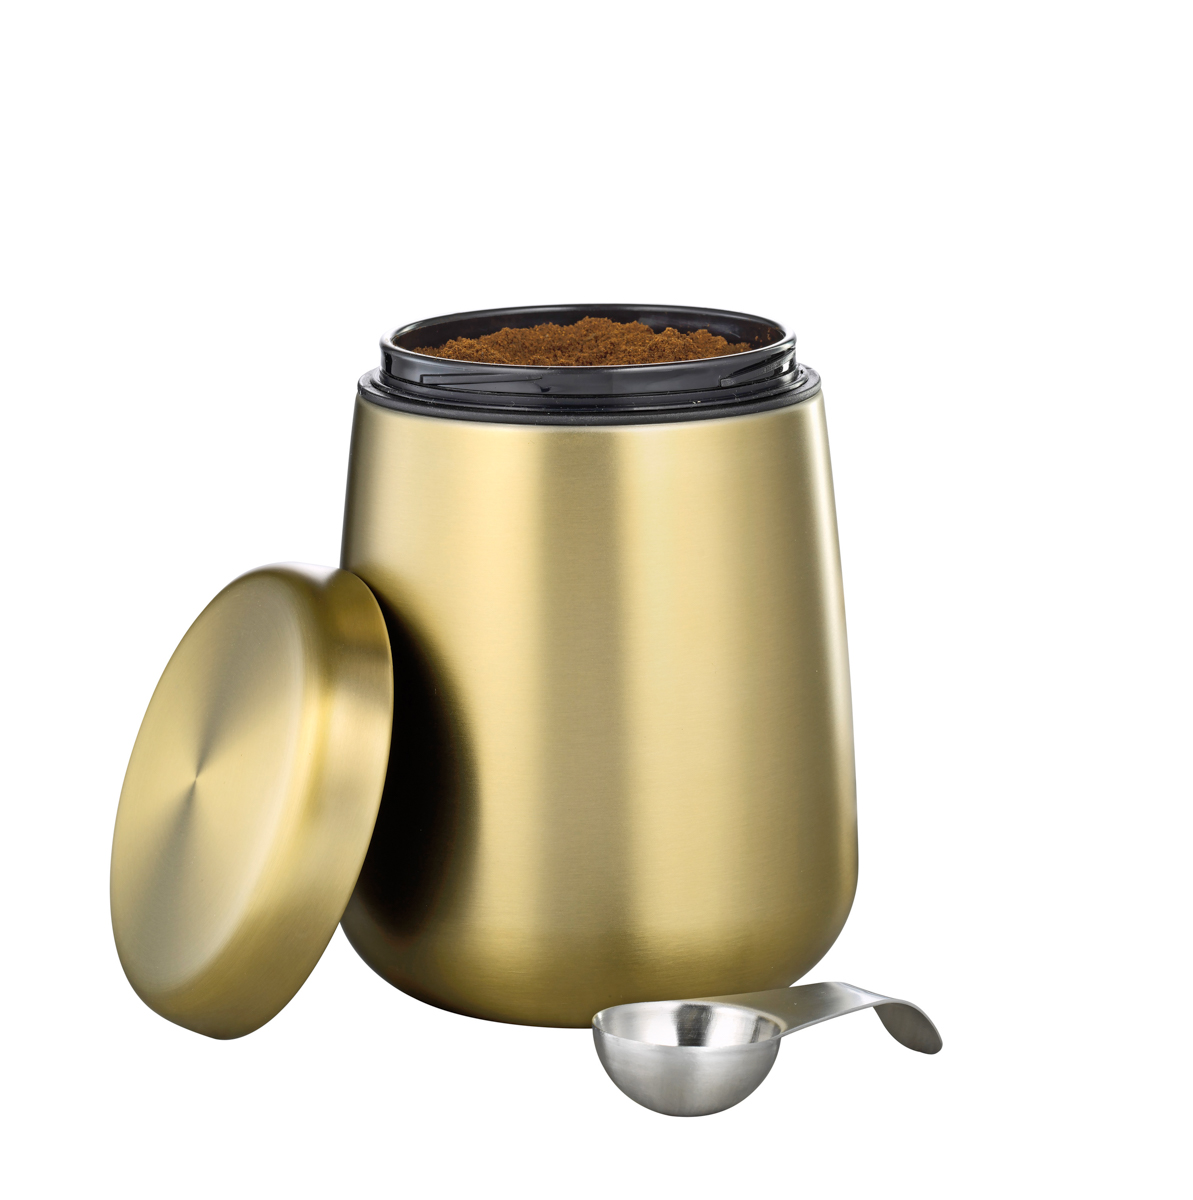 Vorratsdose AVIGNON, aus Edelstahl 18/10, champagnerfarben lackiert, Maße: Höhe ca. 16,5cm, Durchmesser ca. 11,5 cm.